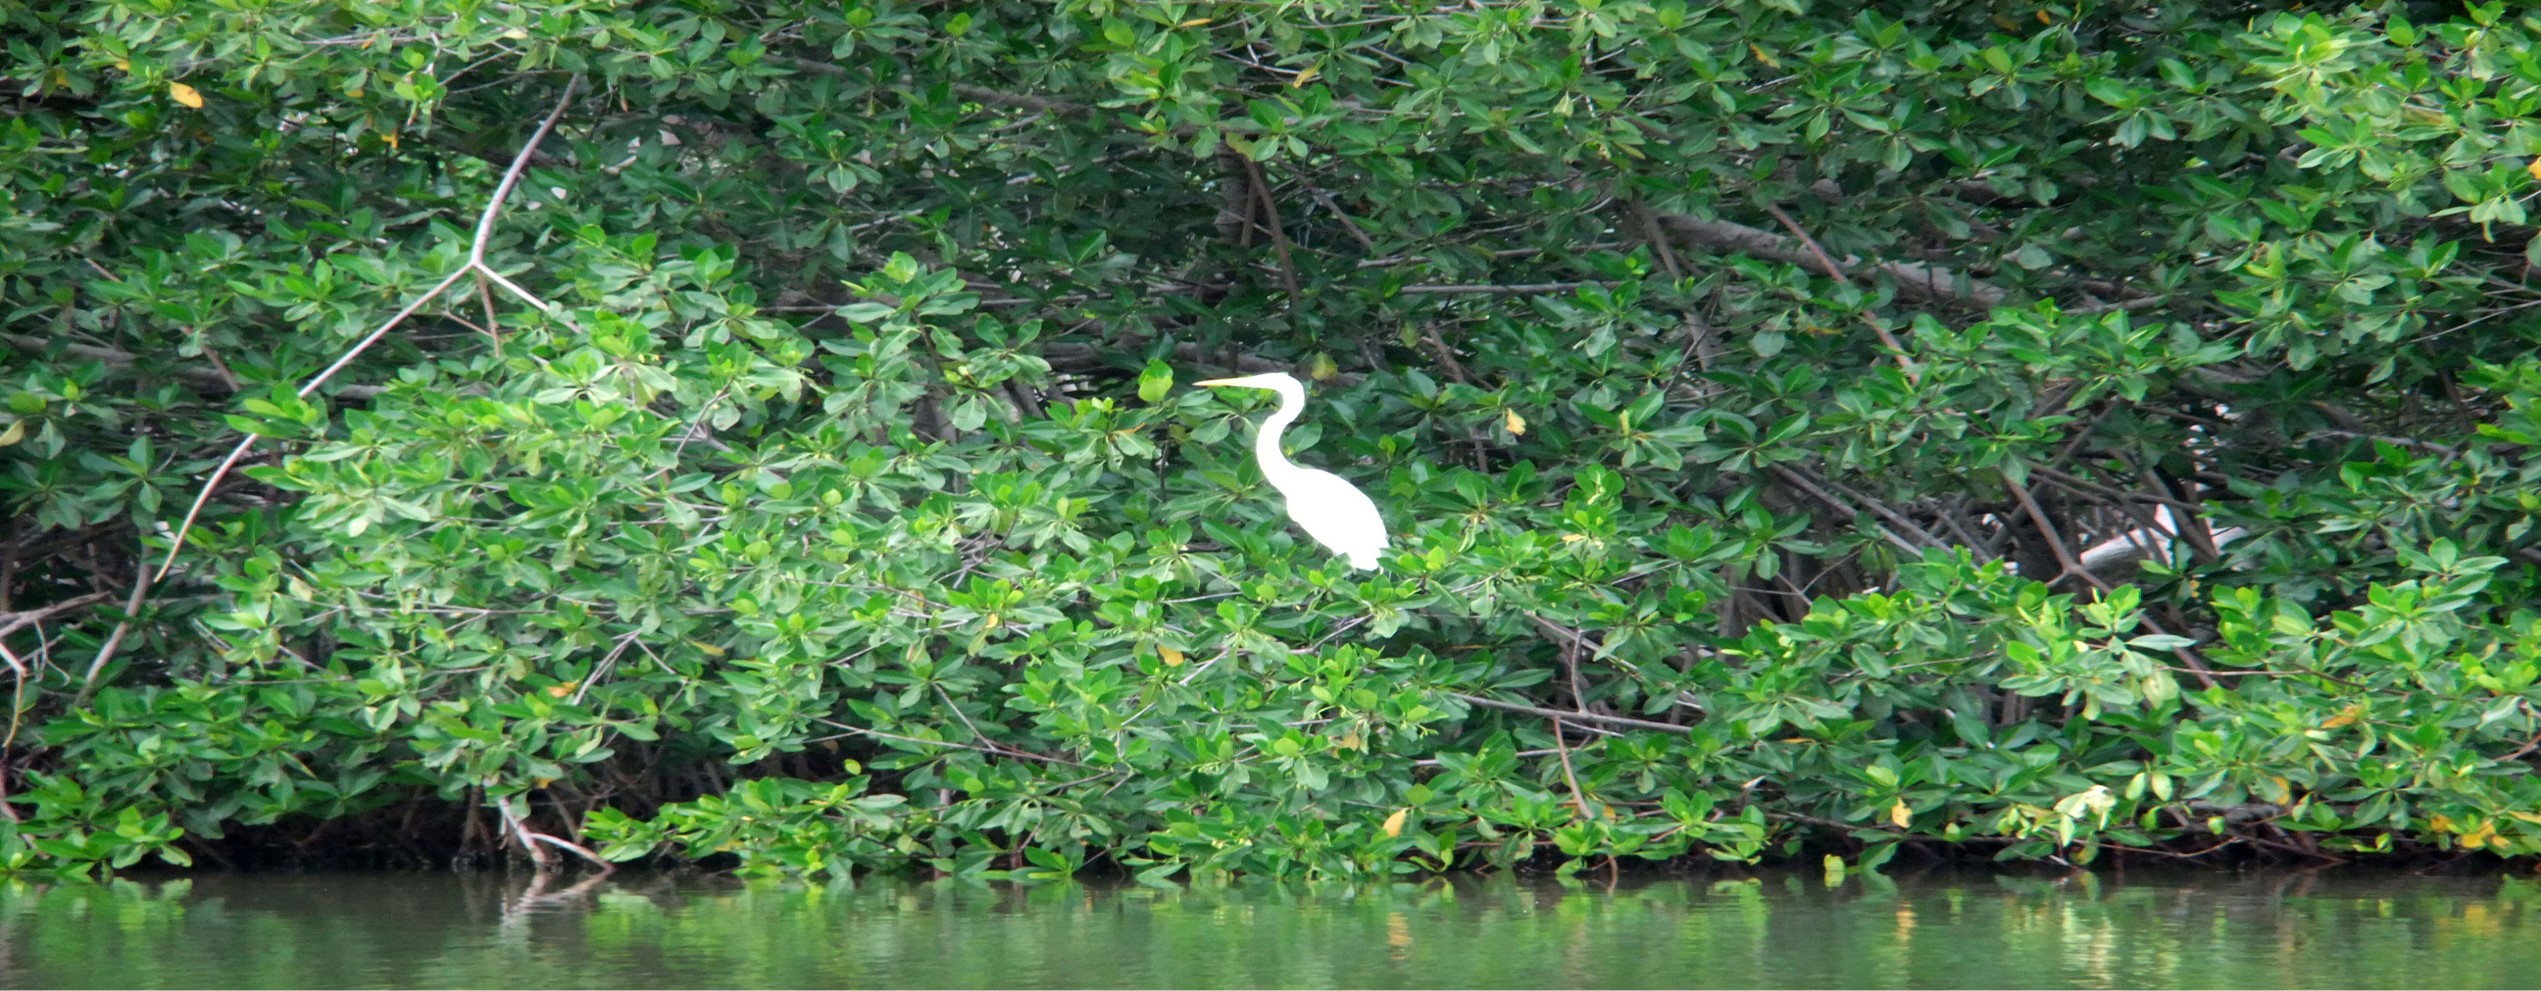 mangroven.jpg5